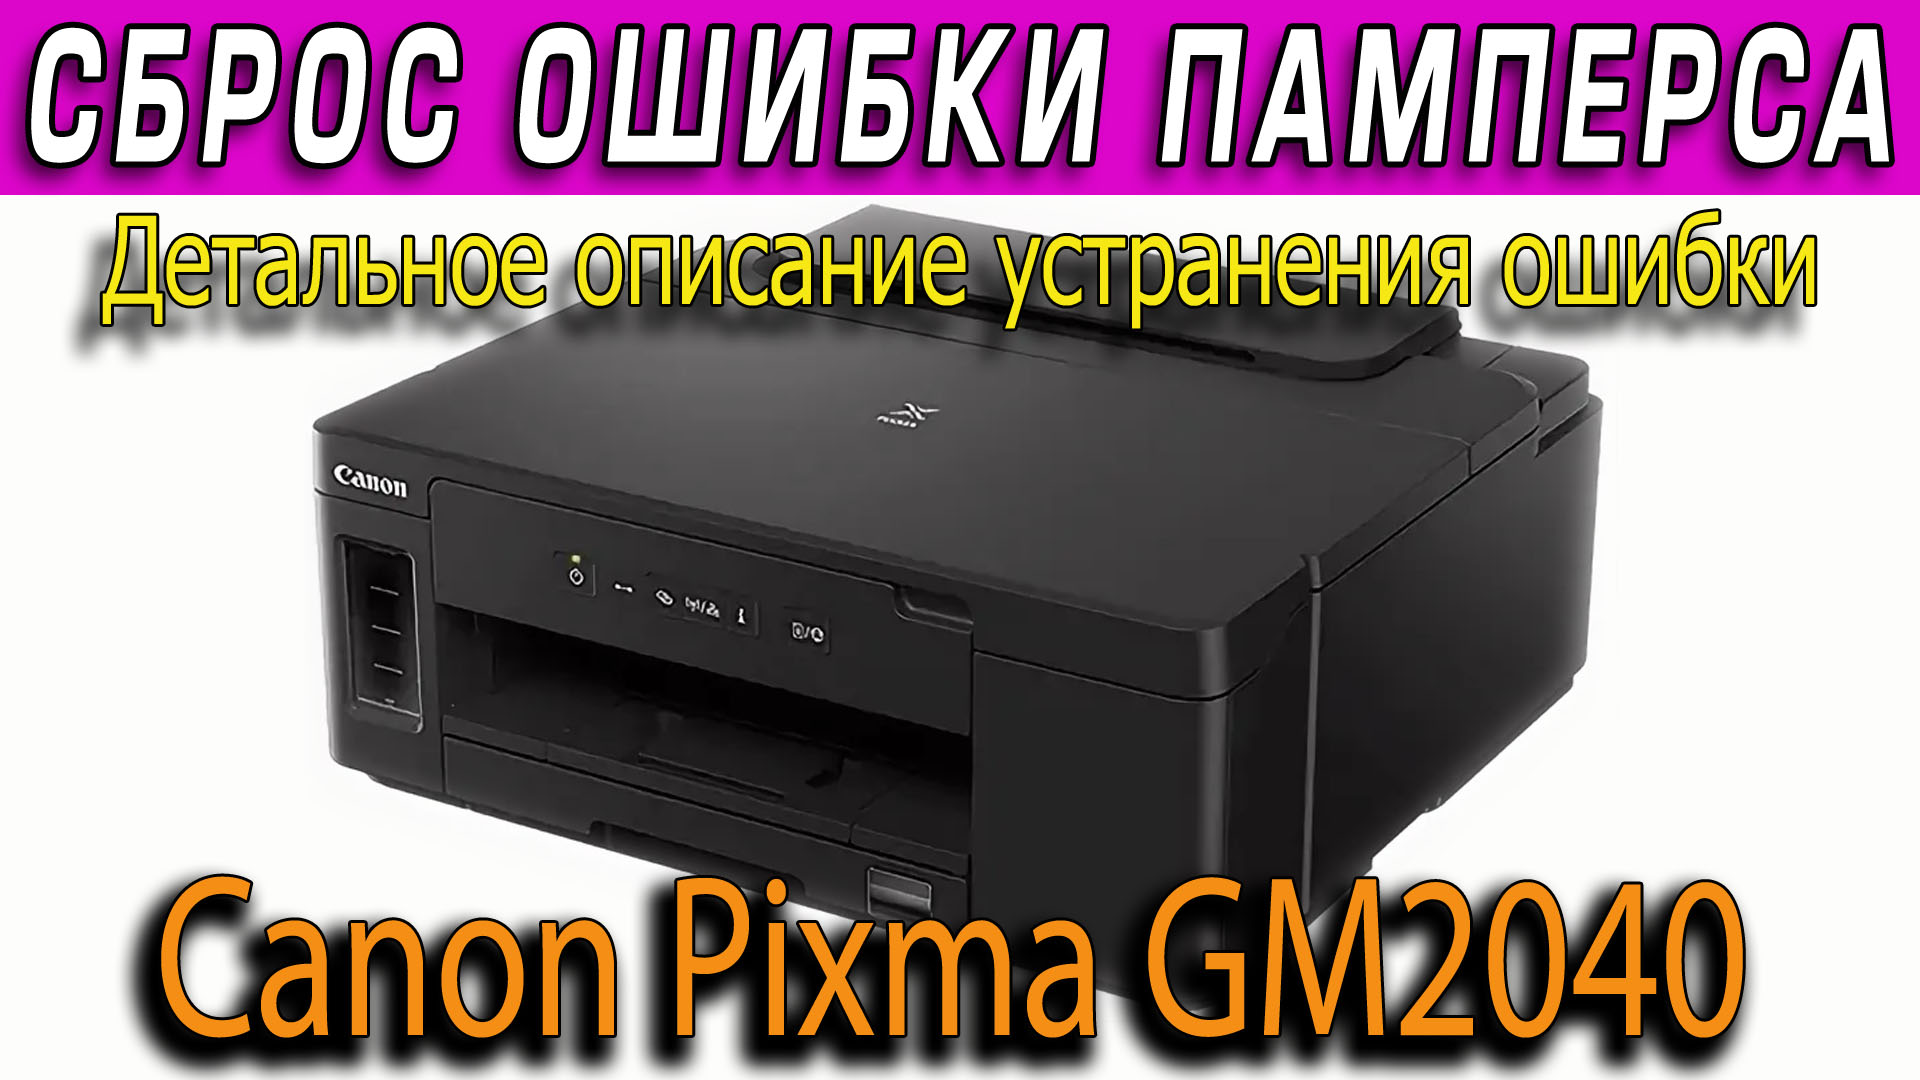 PIXMA gm2040. Canon многофункциональная площадка. Кэнон пиксма 2400. Краска для принтера Canon PIXMA 4800fd 12000. Сброс памперса canon pixma